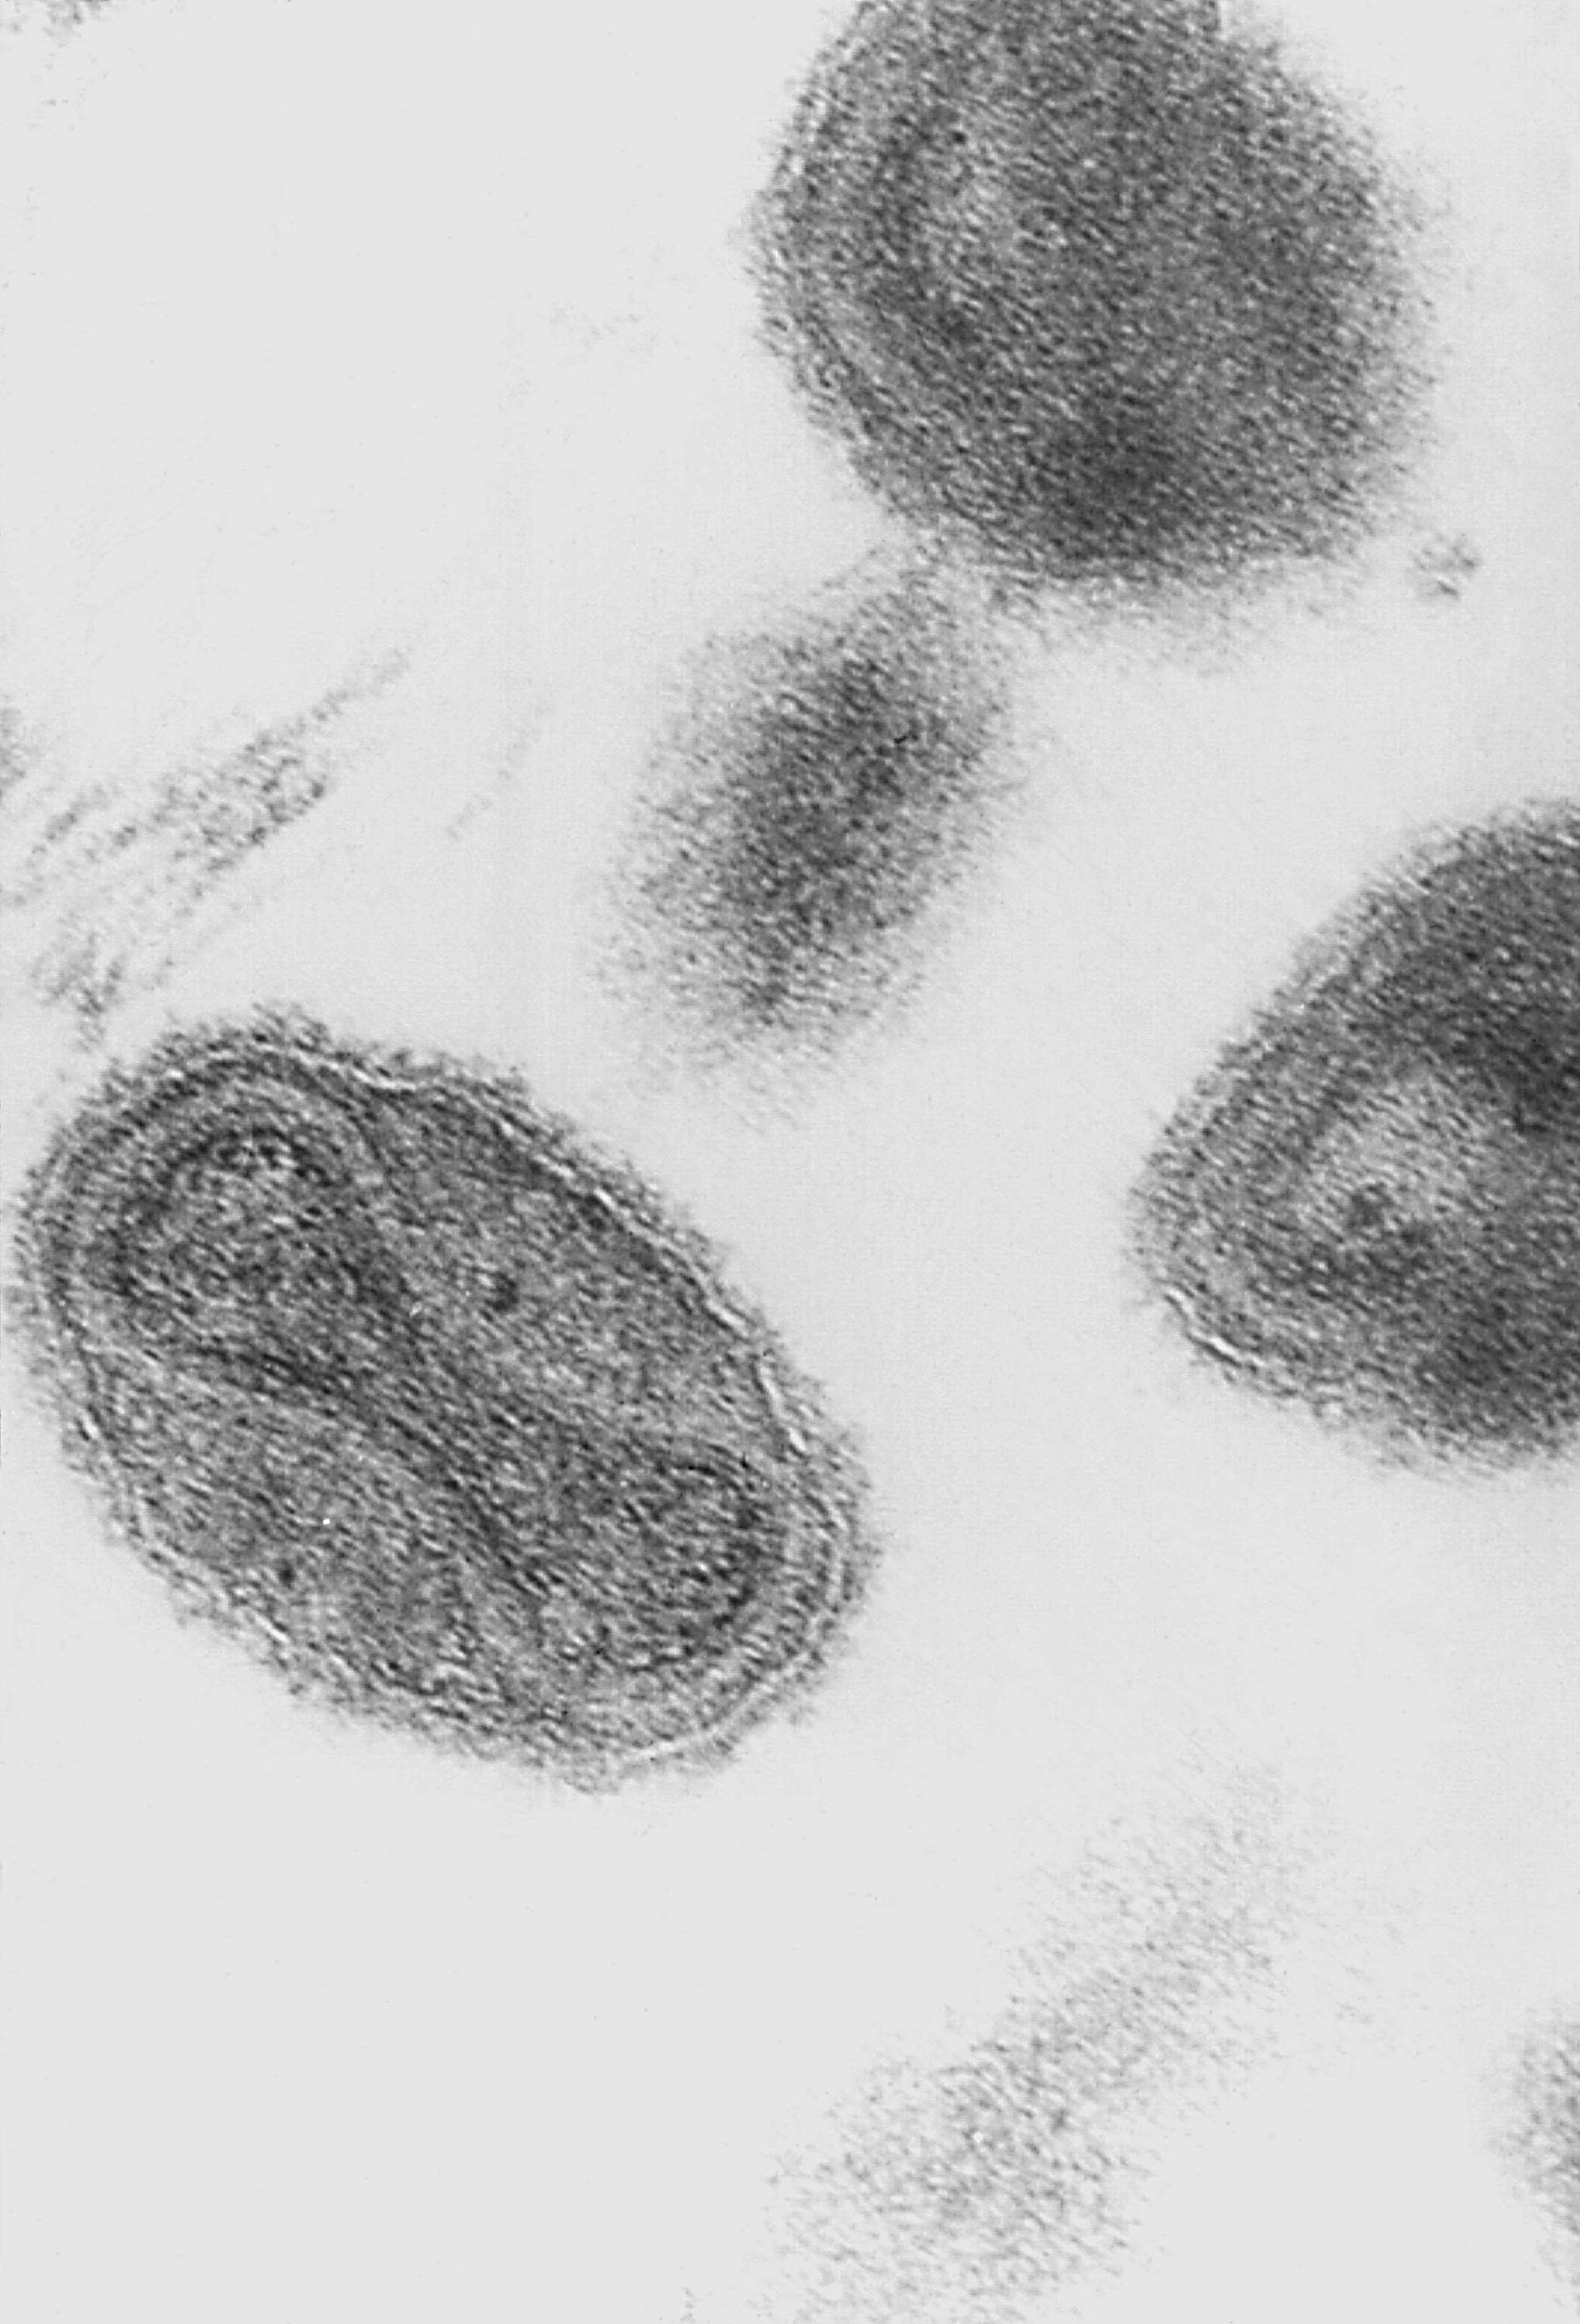 Smallpox Virus Found in FDA Lab